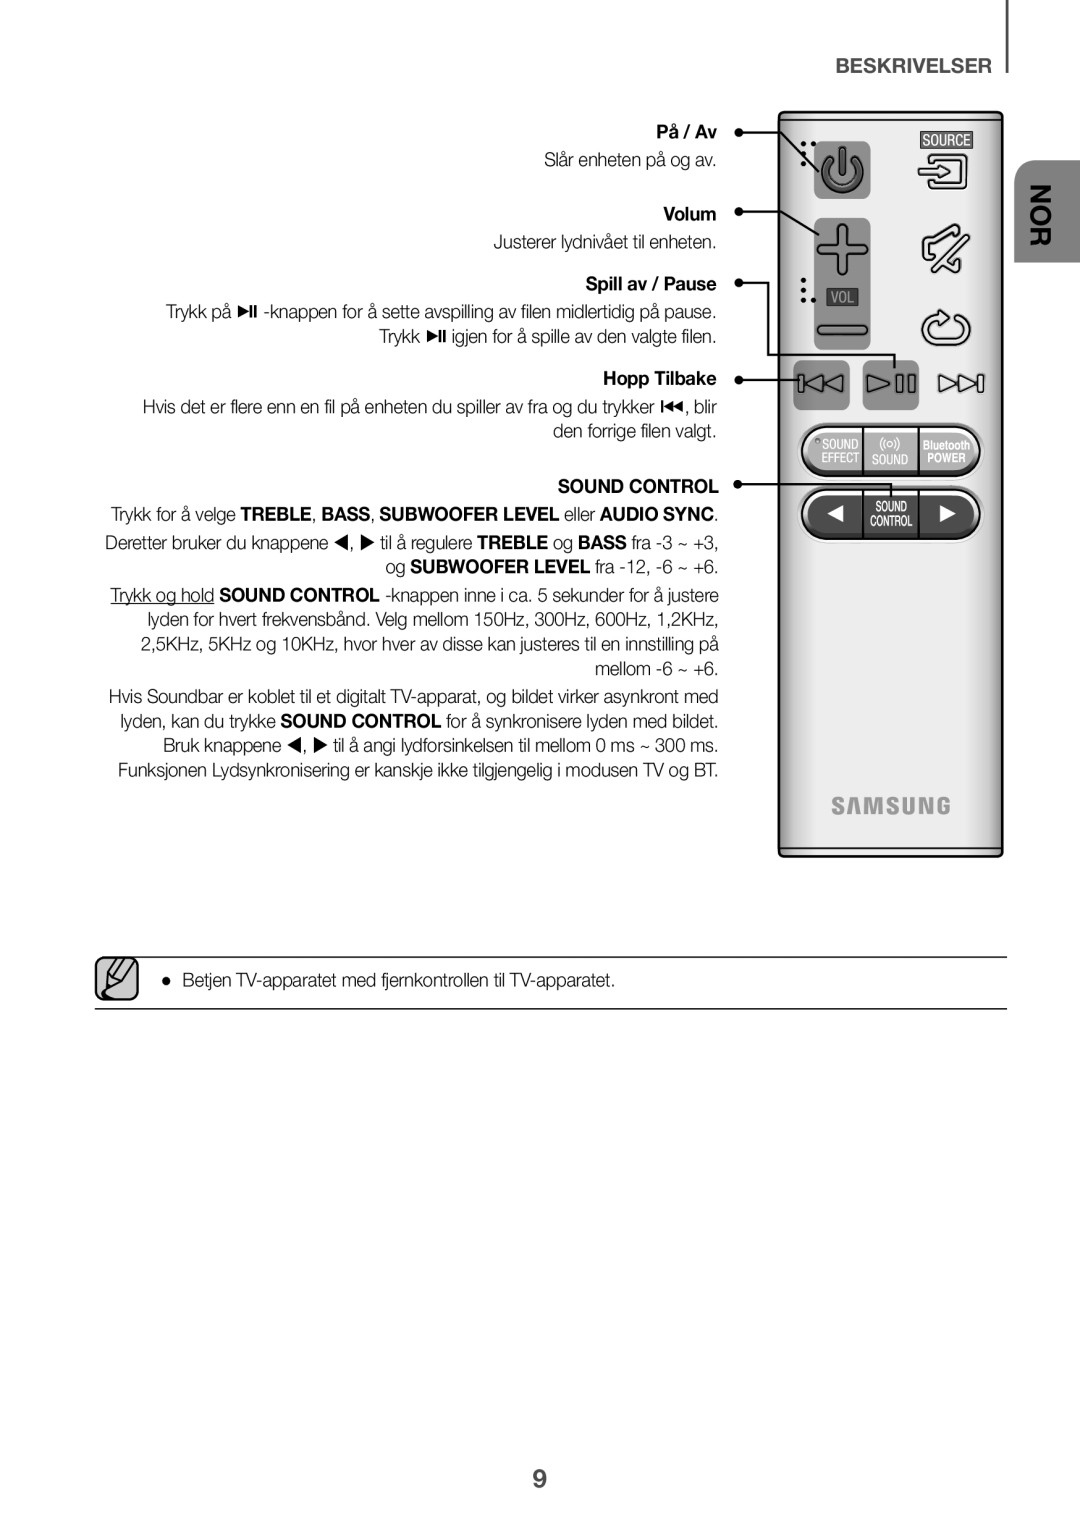 Samsung HW-K651/ZF, HW-K651/EN, HW-K650/EN, HW-K650/ZF, HW-K660/XE, HW-K661/XE, HW-K651/XN manual beskrivelser, På / Av, Volum 